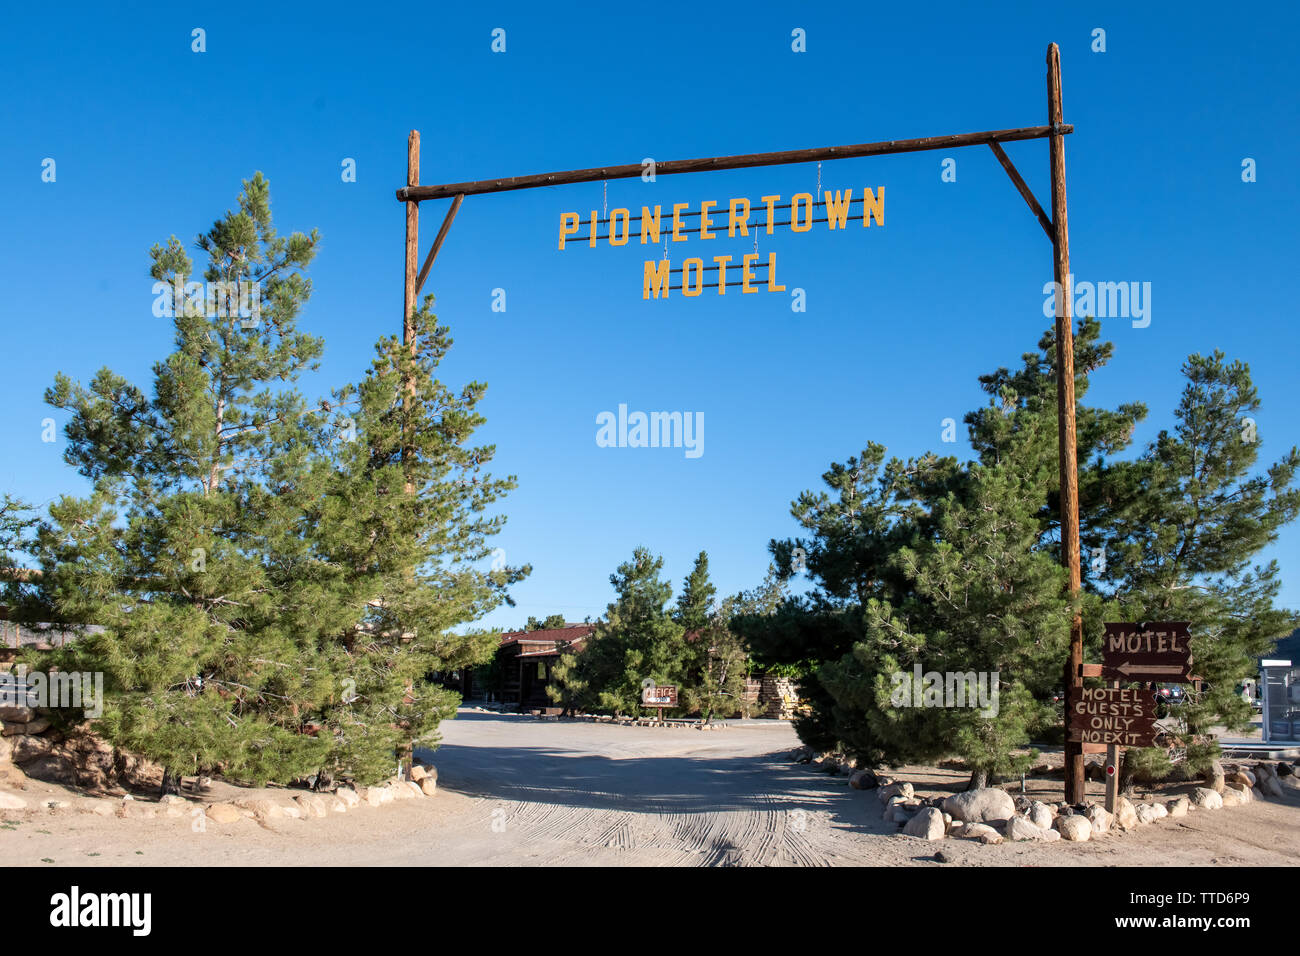 Pioneertown im südlichen Kalifornien, USA Stockfoto